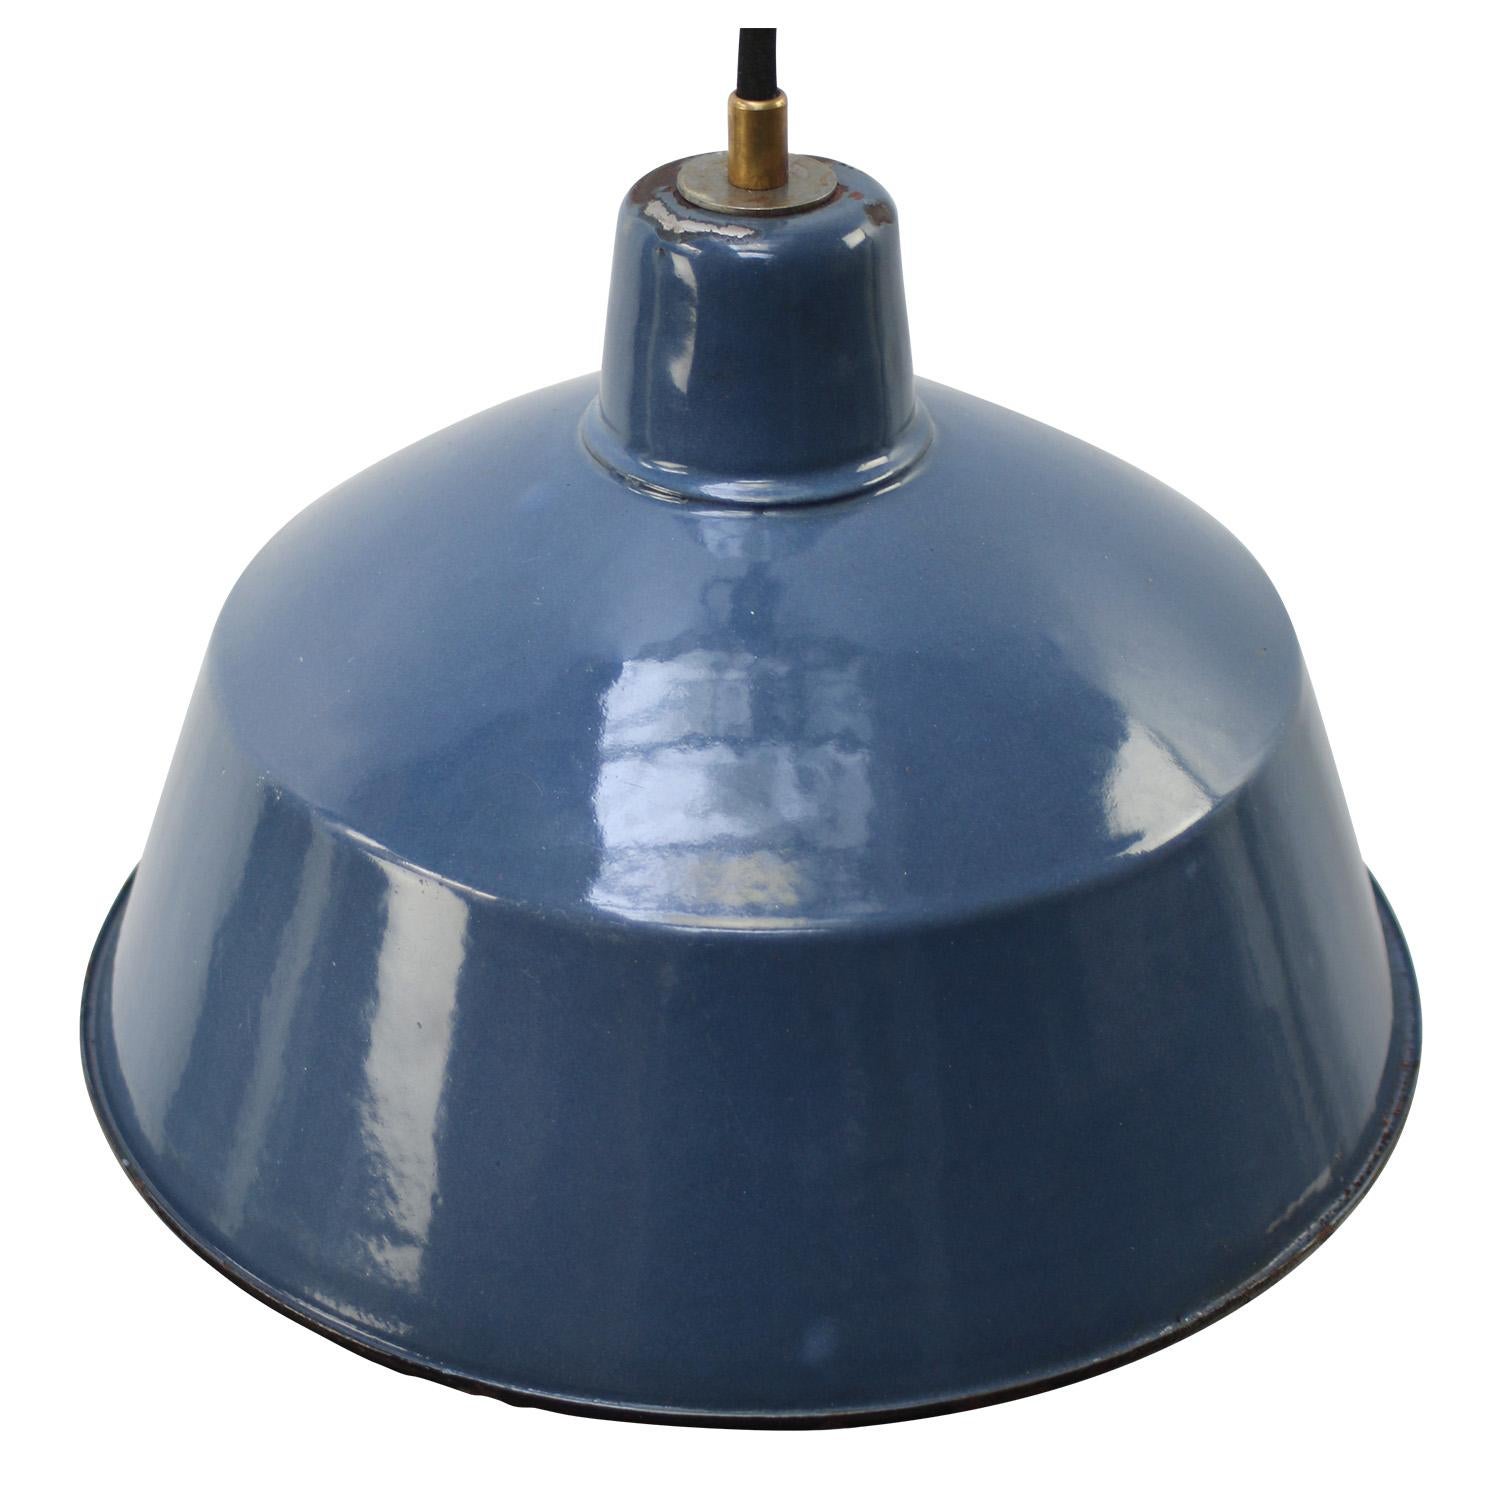 Industrielles Fabrikpendel
Blau emailliertes weißes Interieur

Gewicht: 1,50 kg / 3,3 lb

Der Preis gilt für jeden einzelnen Artikel. Alle Lampen sind nach internationalen Normen für Glühbirnen, energieeffiziente und LED-Lampen geeignet.